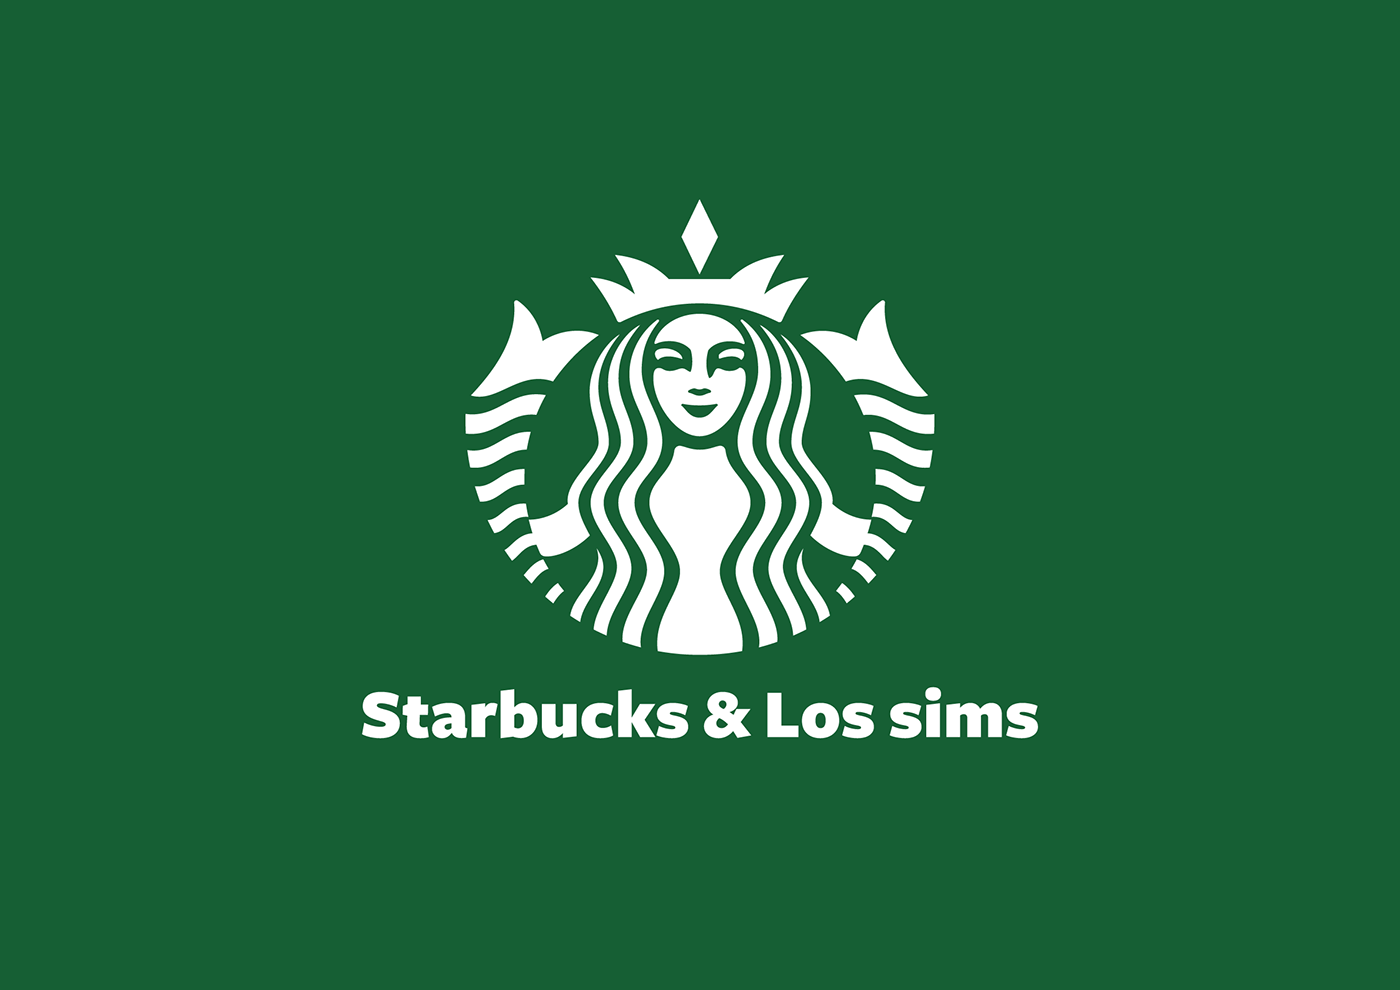 campaign Campaña diseño gráfico Los Sims publicidad redes sociales Social media post starbucks the sims